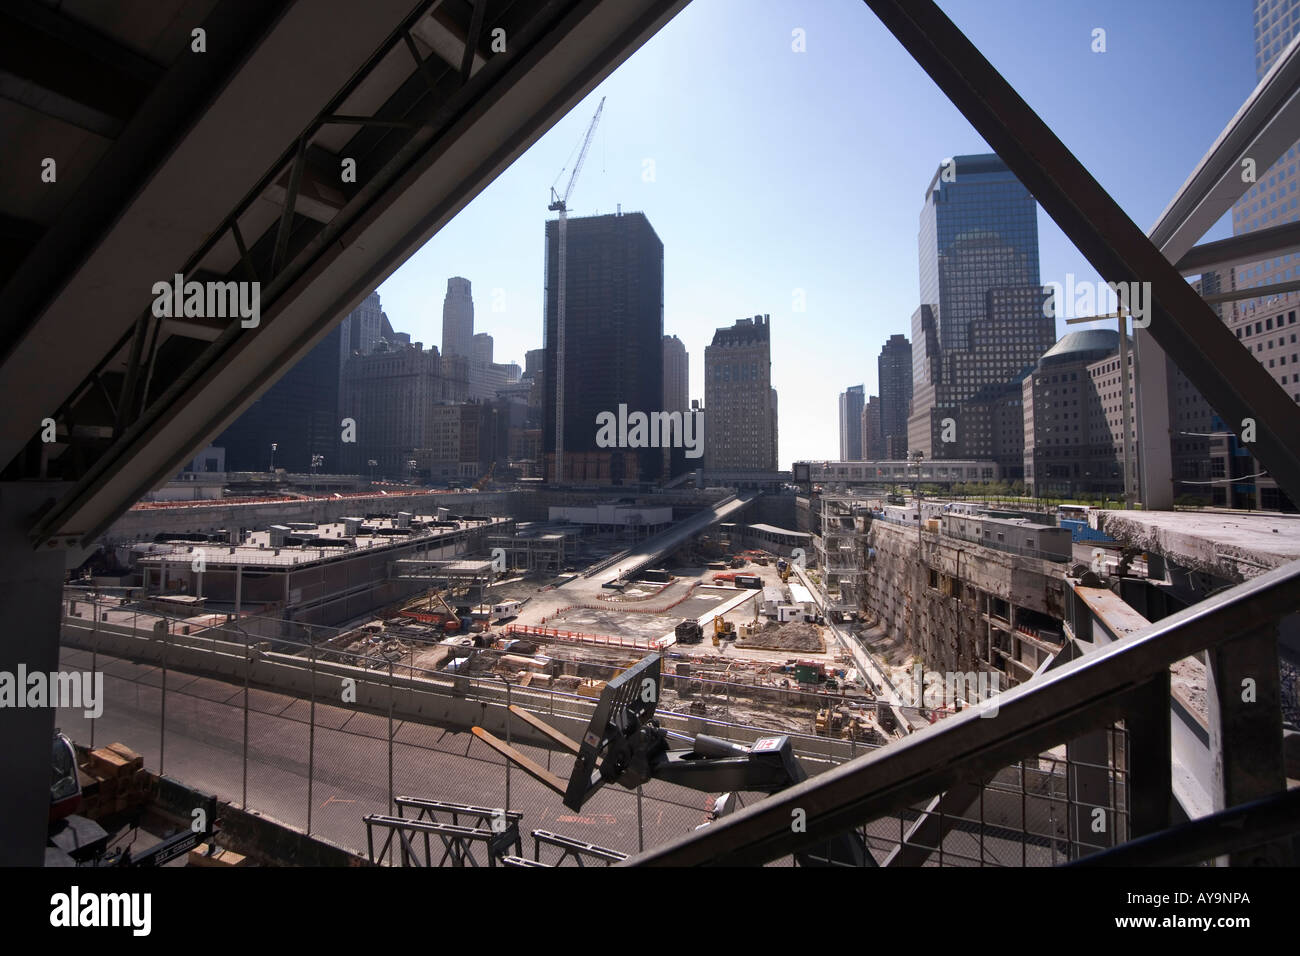 Le Ground Zero chantier de construction dans la région de lavis de Manhattan New York City Financial District scène du 11 septembre 2001 Banque D'Images